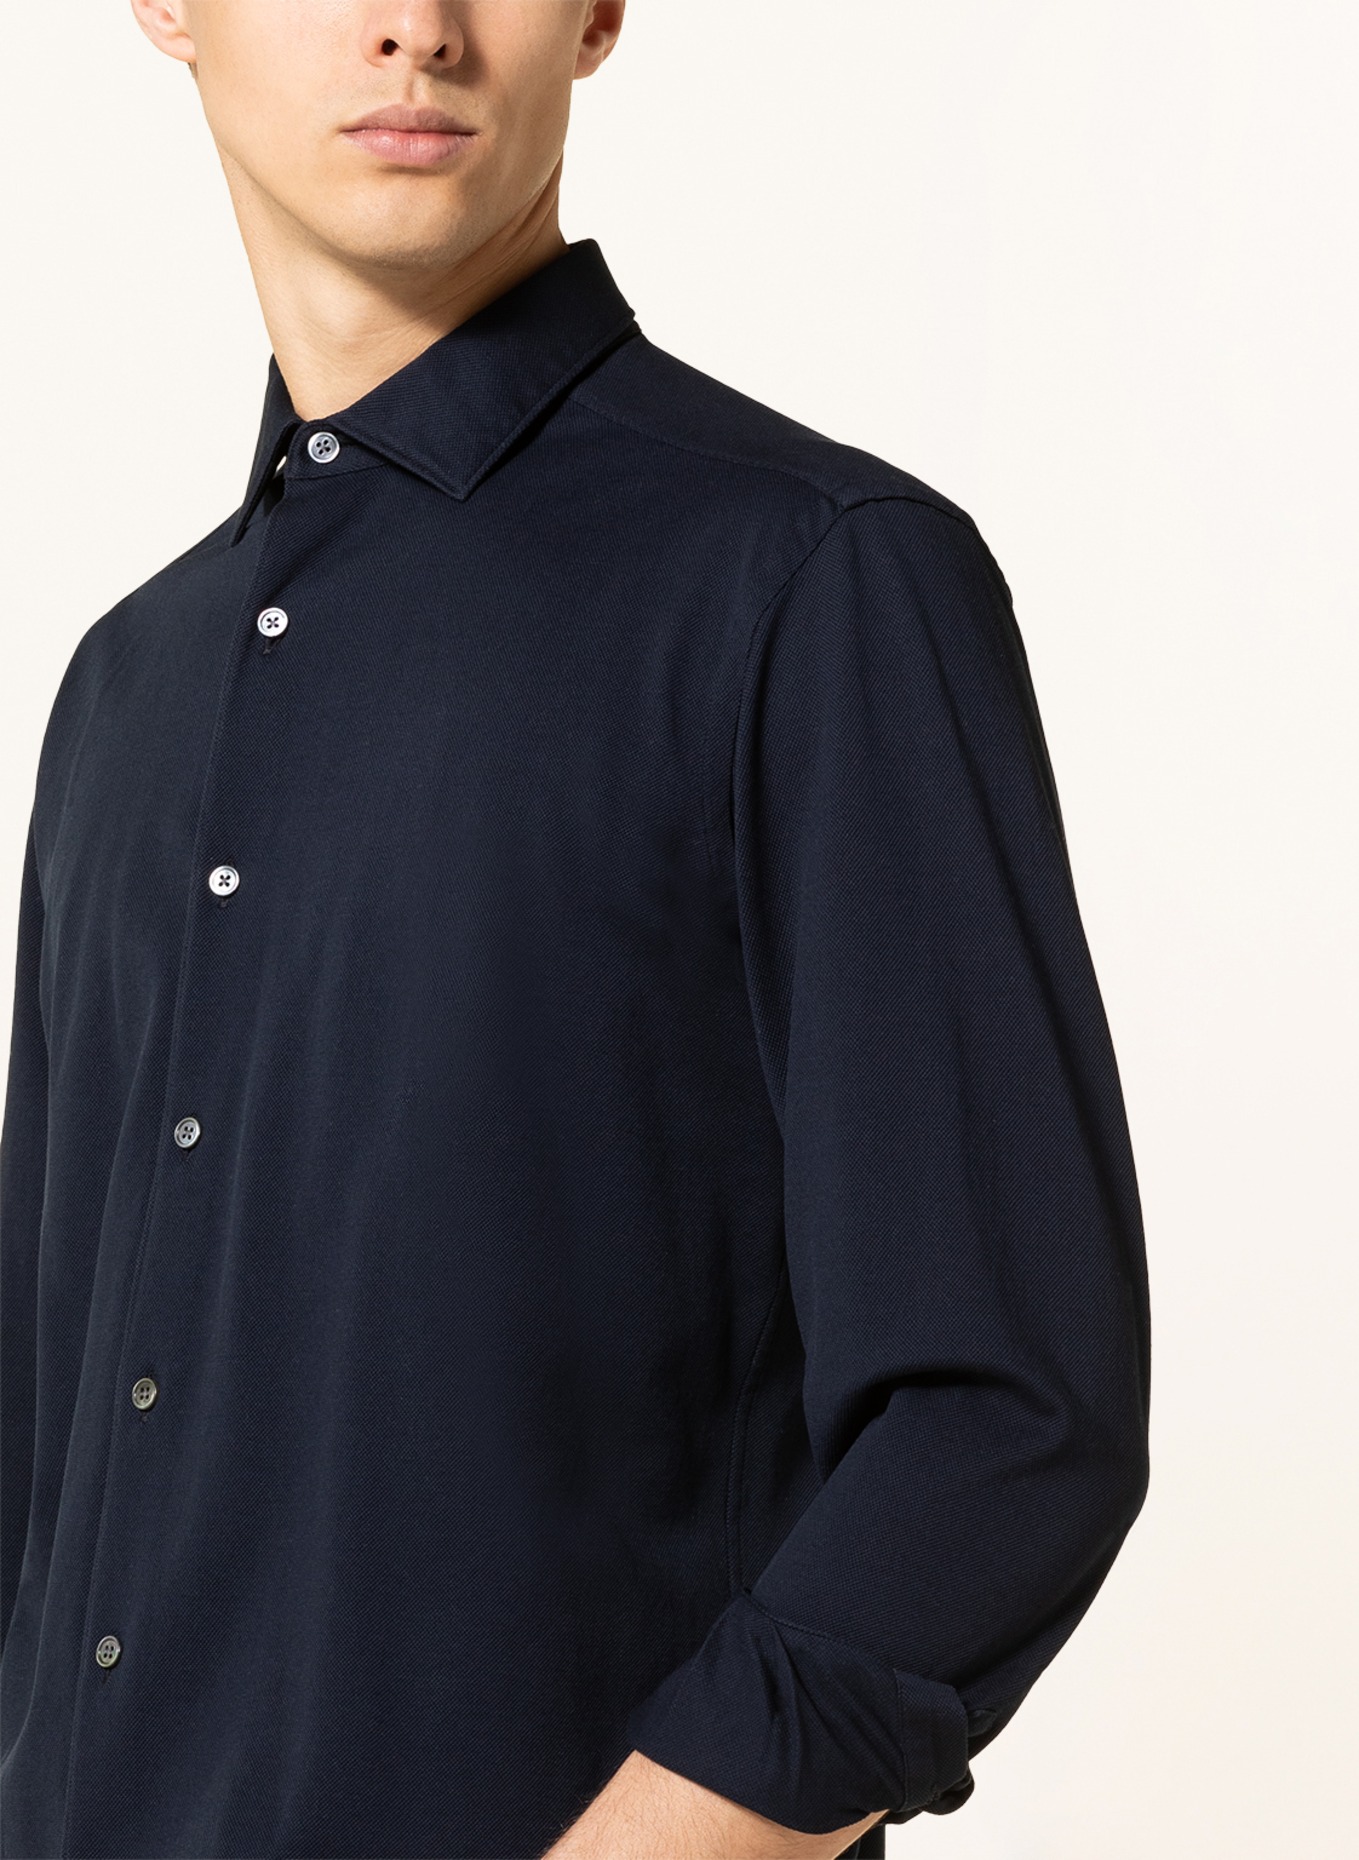 ZEGNA Jersey shirt regular fit, Color: DARK BLUE (Image 4)